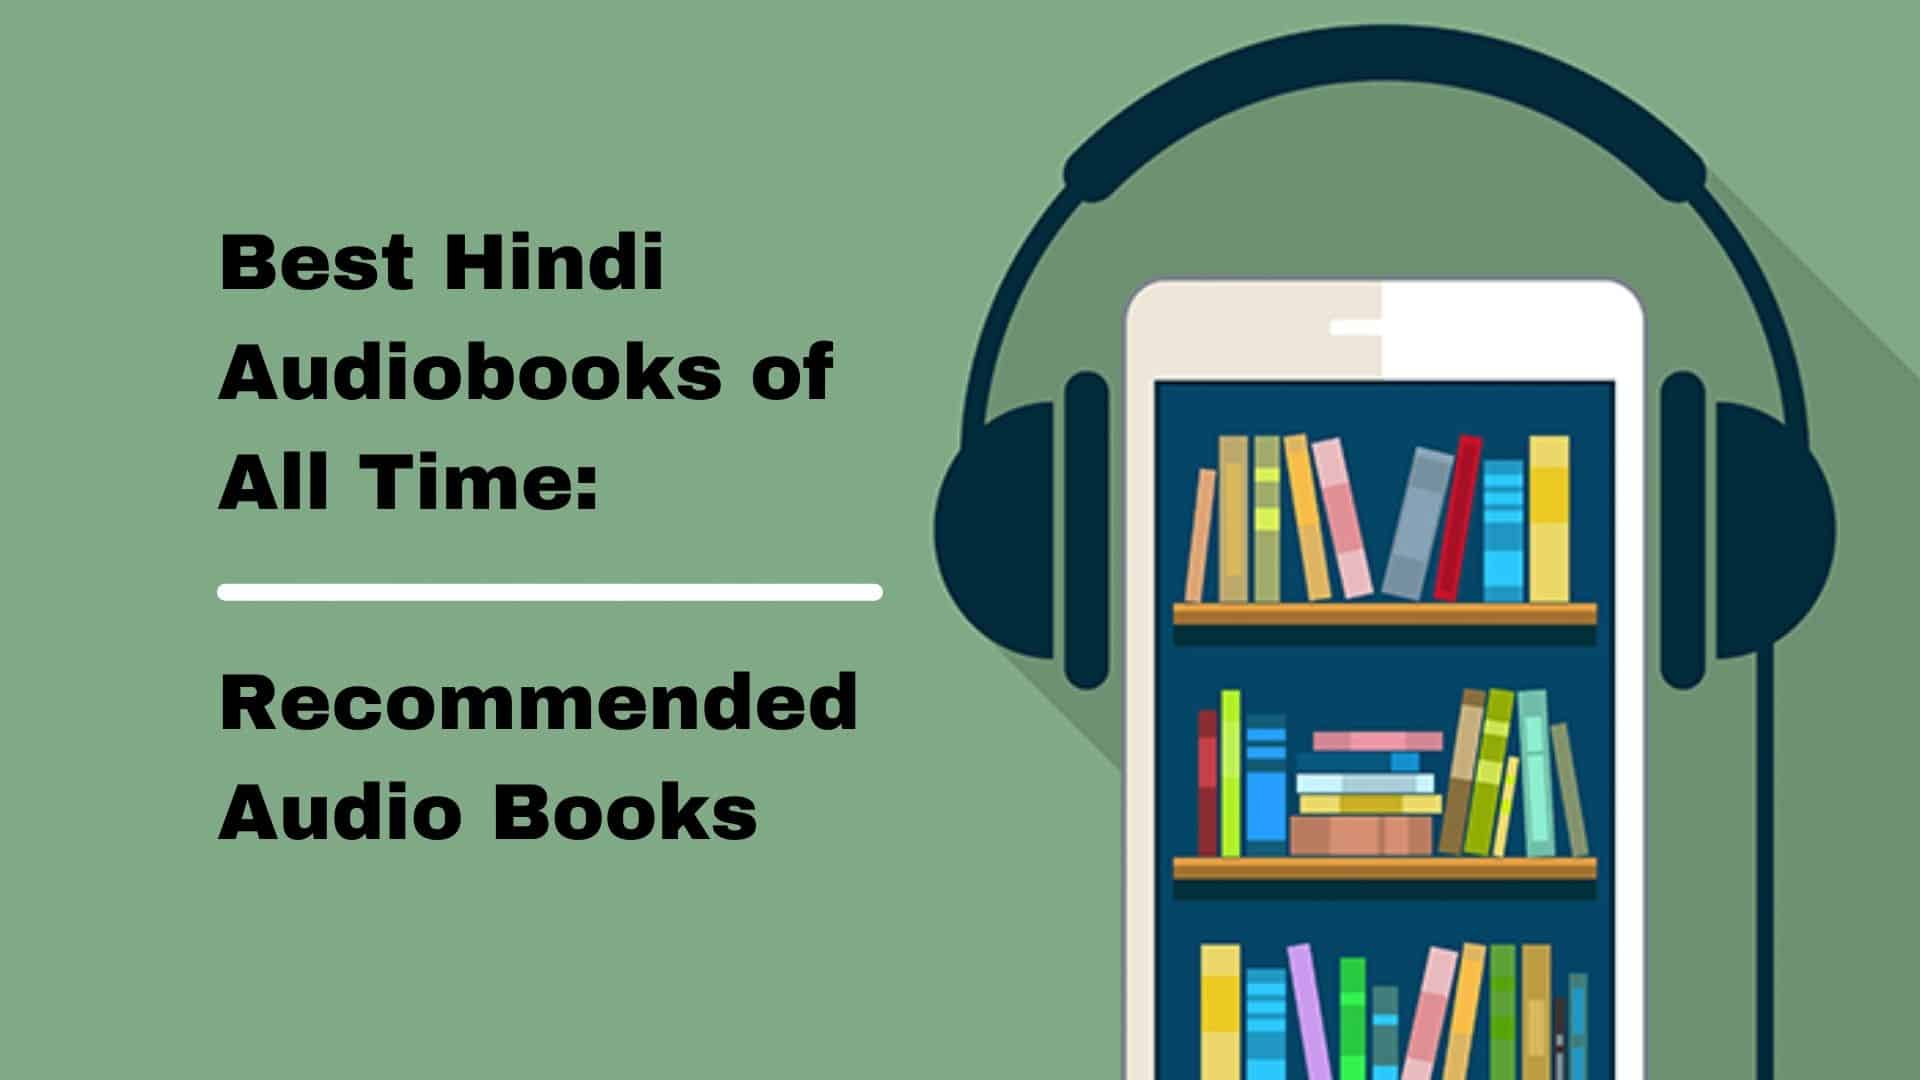 सभी समय की सर्वश्रेष्ठ हिंदी ऑडियो पुस्तकें अनुशंसित ऑडियो पुस्तकें